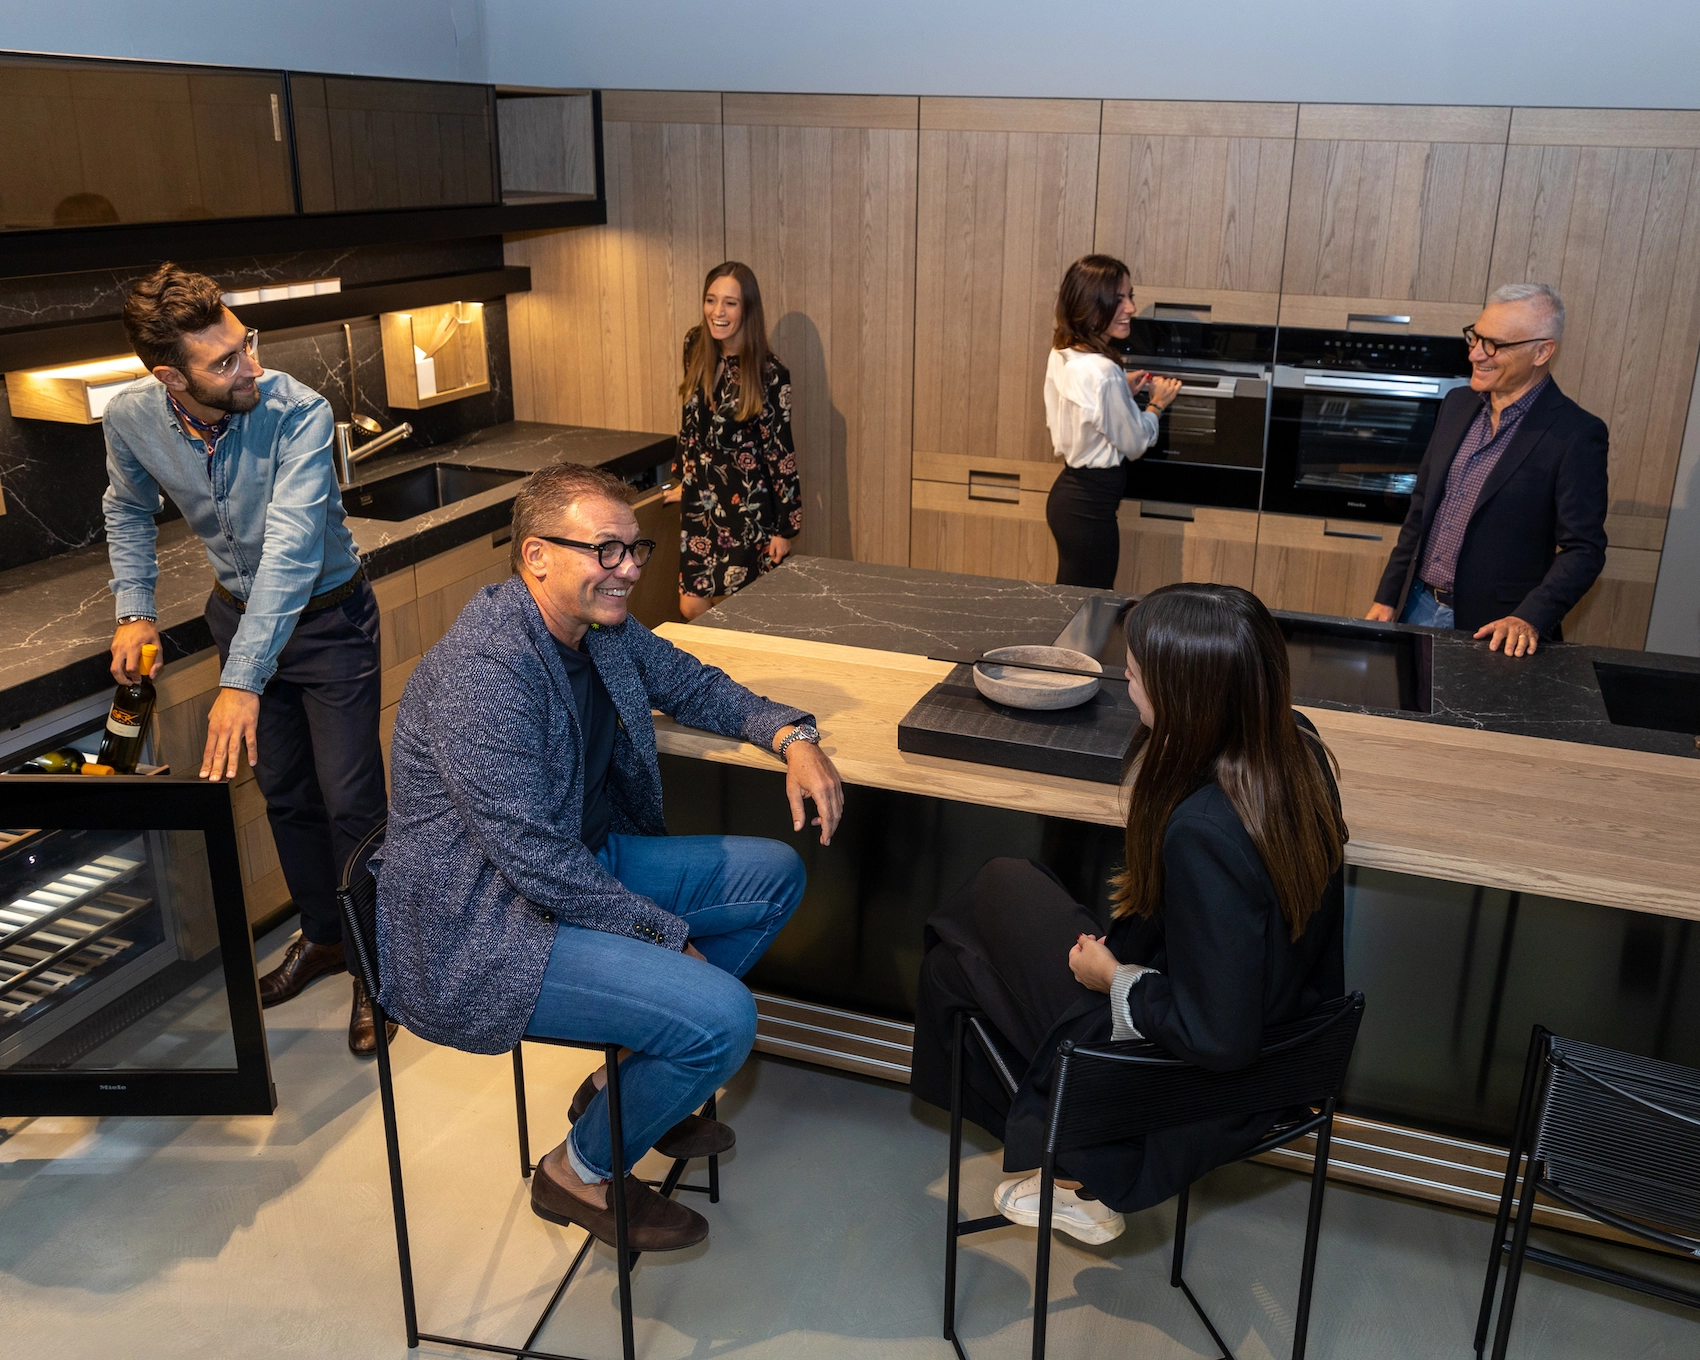 Fotografia dall'alto di una cucina Arclinea in legno mentre 6 persone ridono vivendo l'ambiente